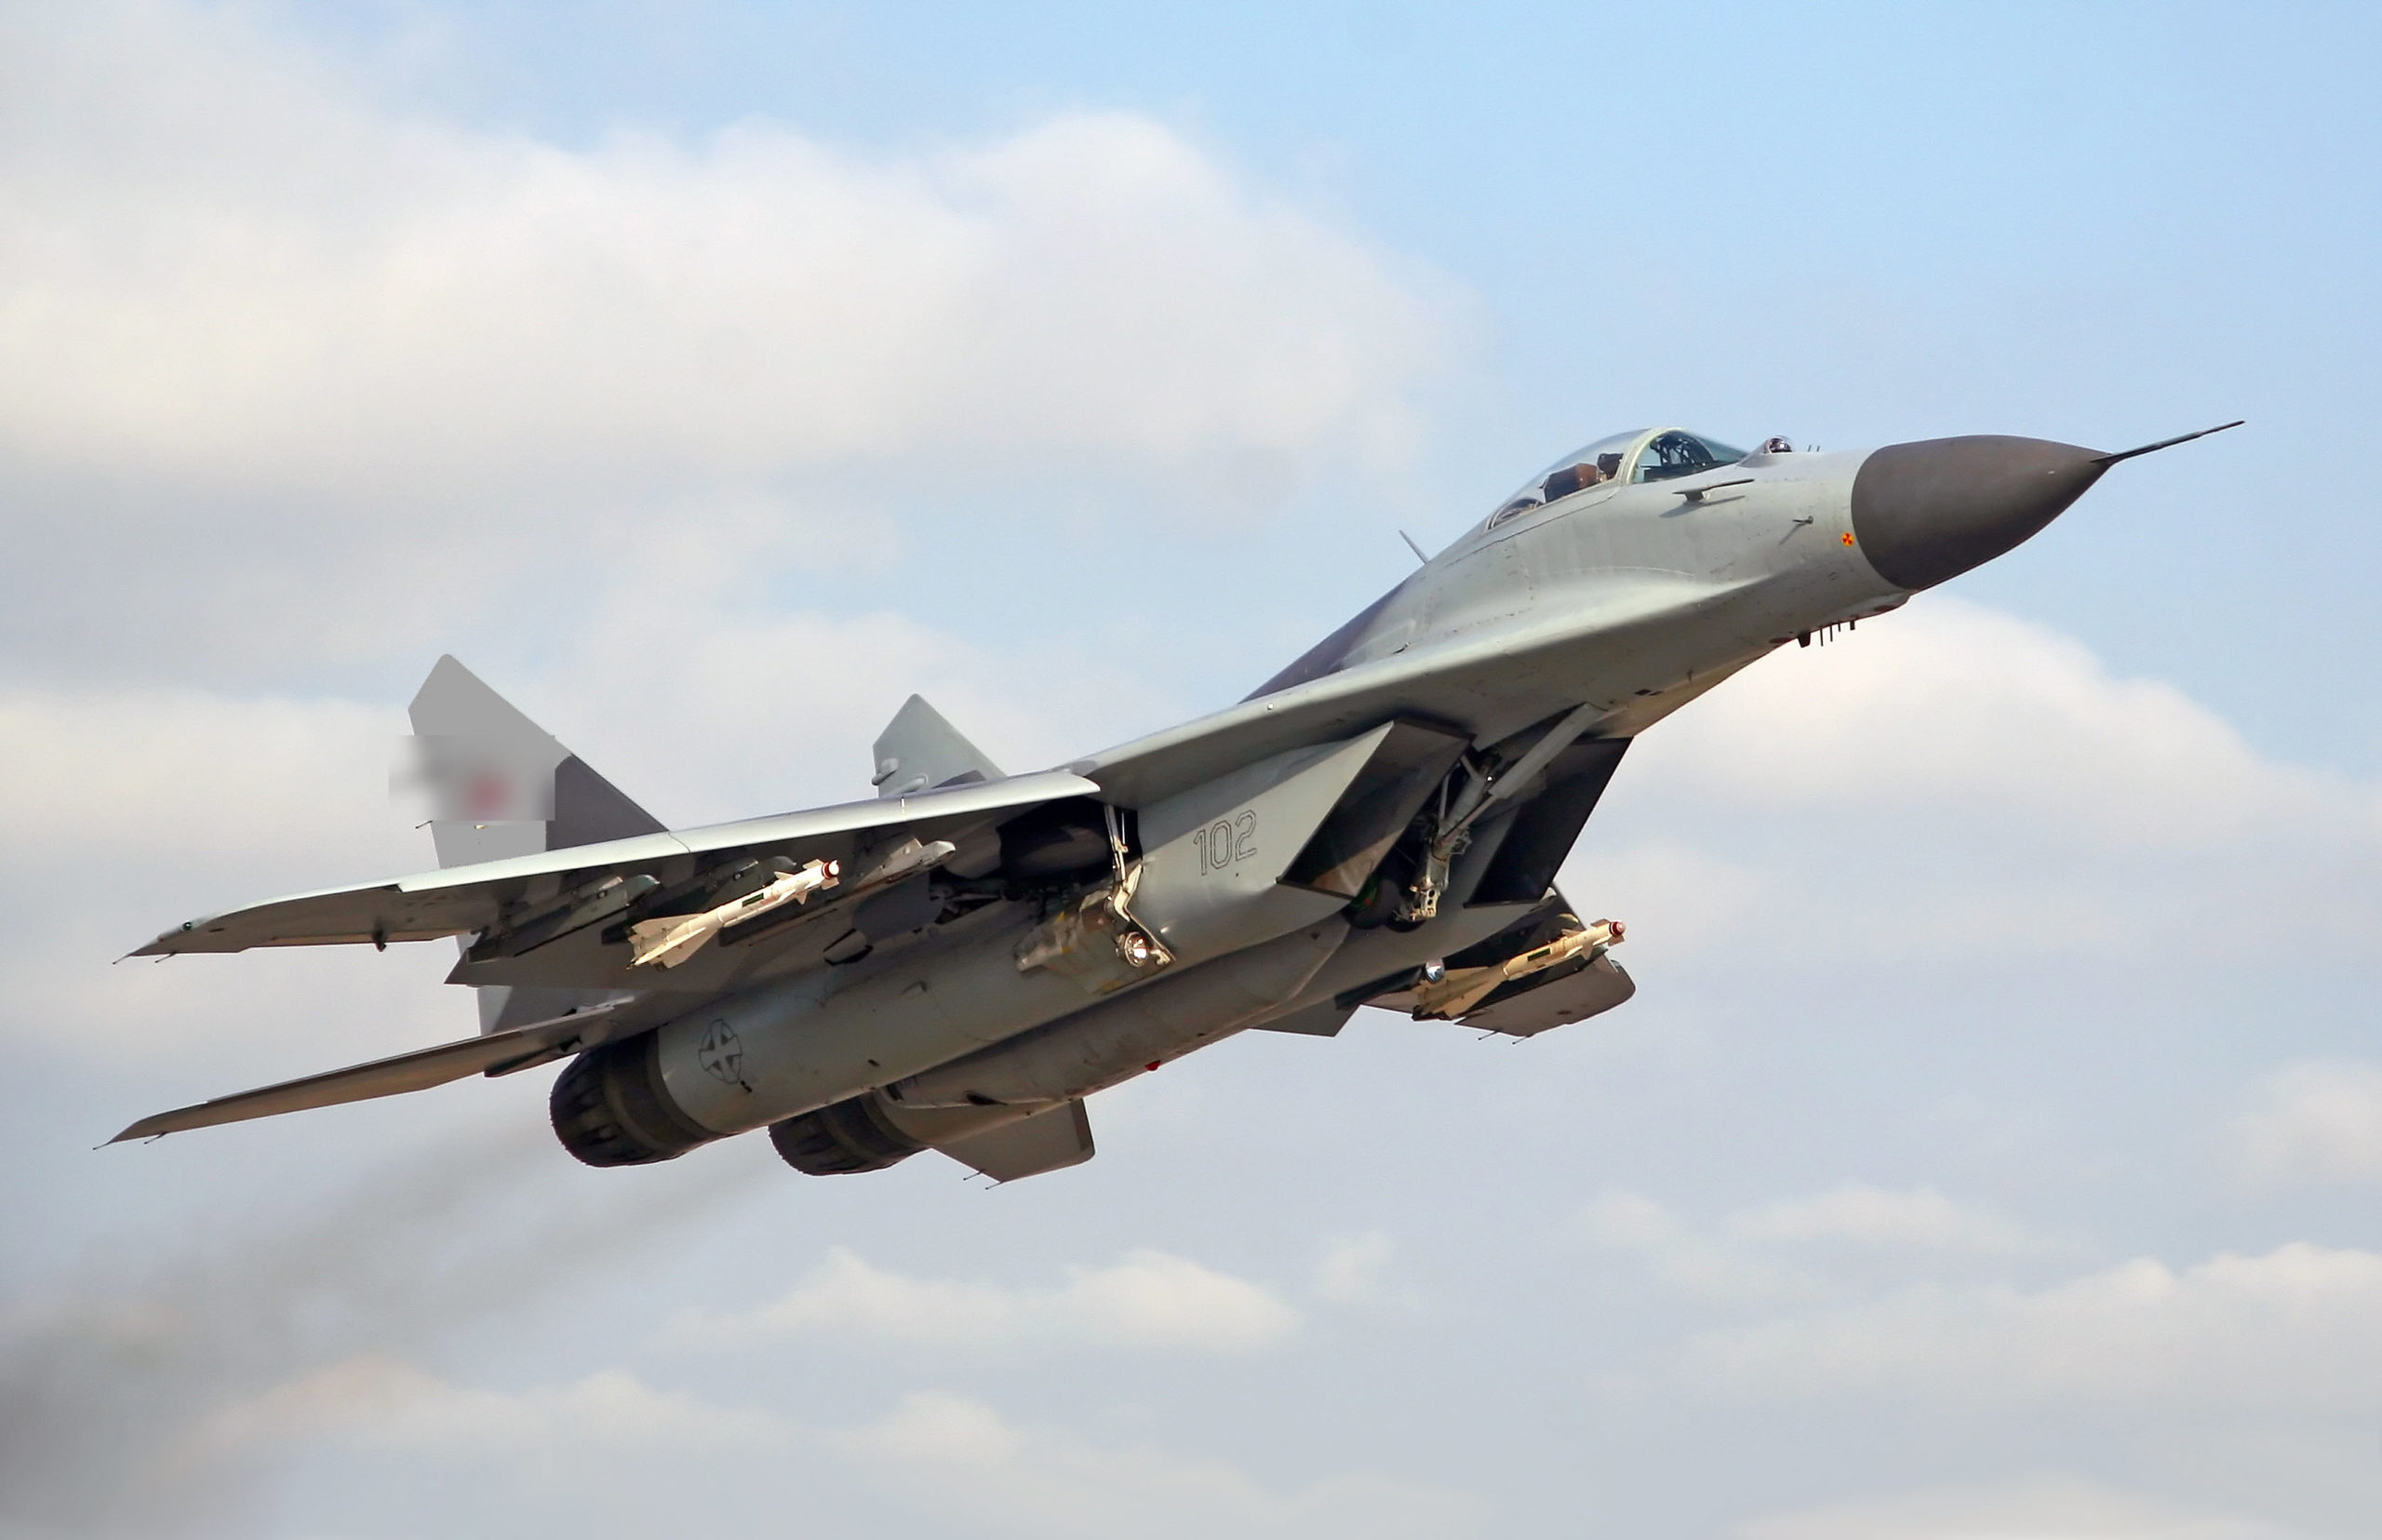 Η Ρωσία αποσύρει μαχητικά αεροσκάφη από την Ουκρανία, σύμφωνα με μυστική έκθεση του ΝΑΤΟ